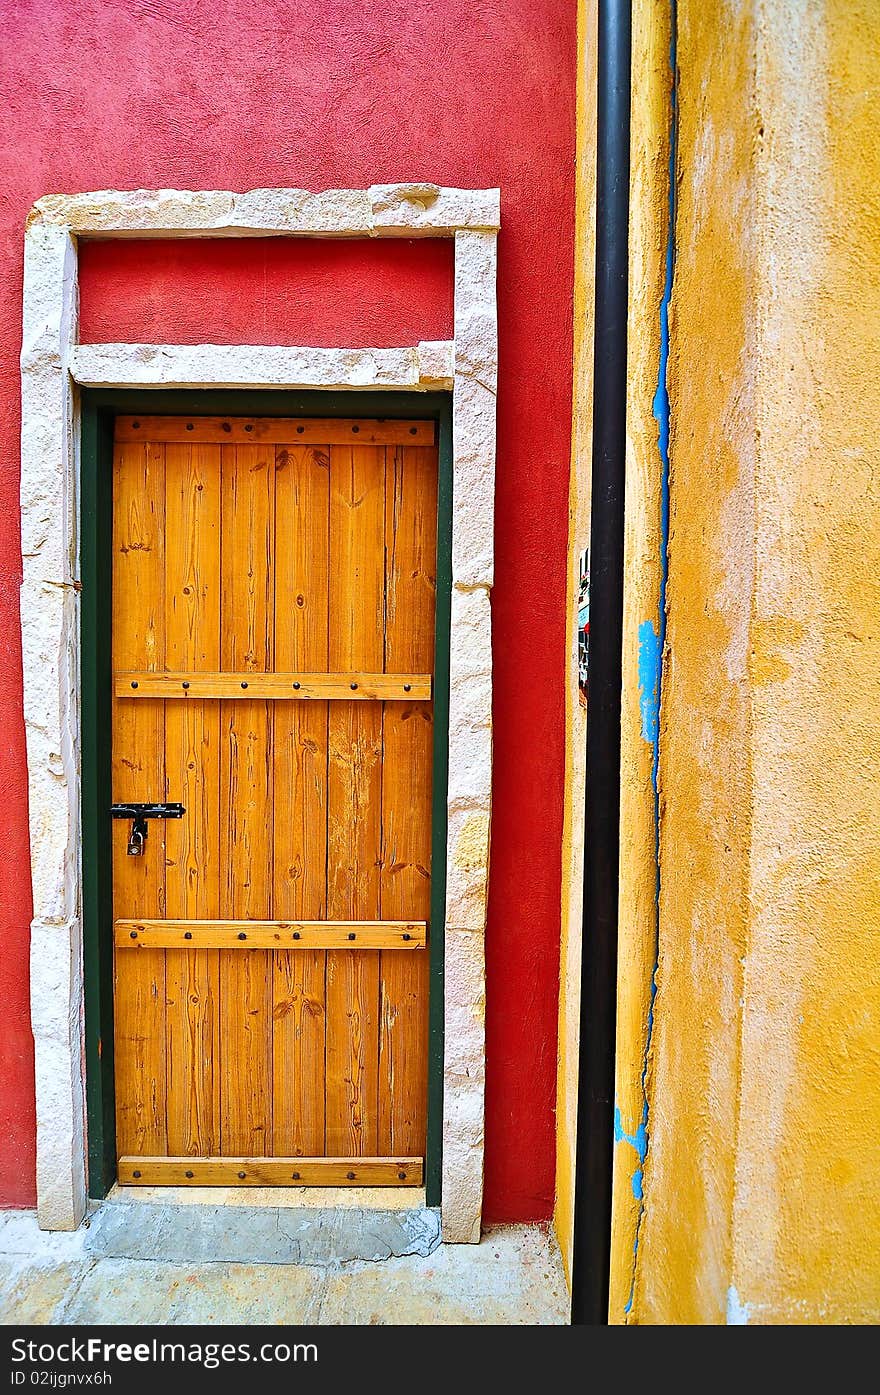 Colorful wooden door, It's very nice.